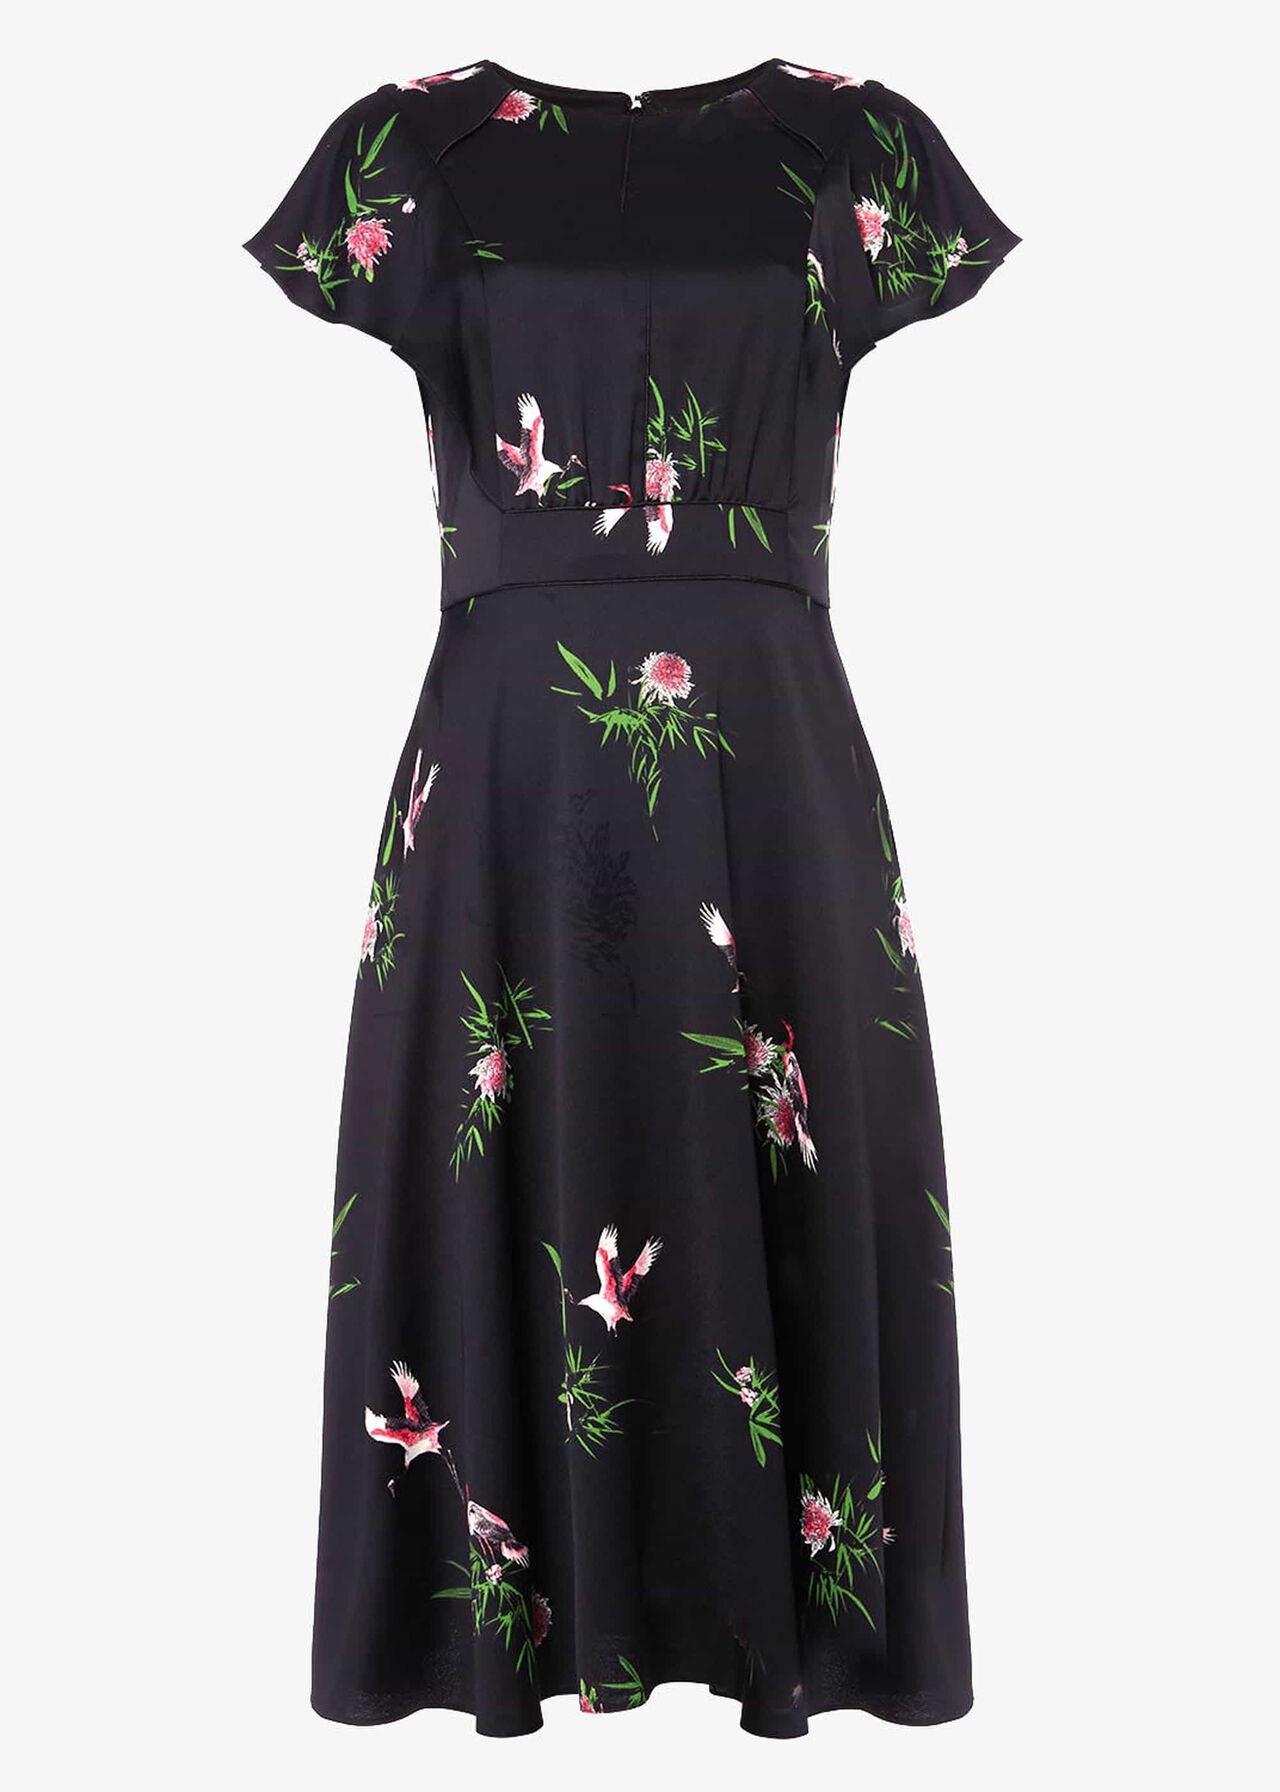 Gwendolyn Floral Print Dress